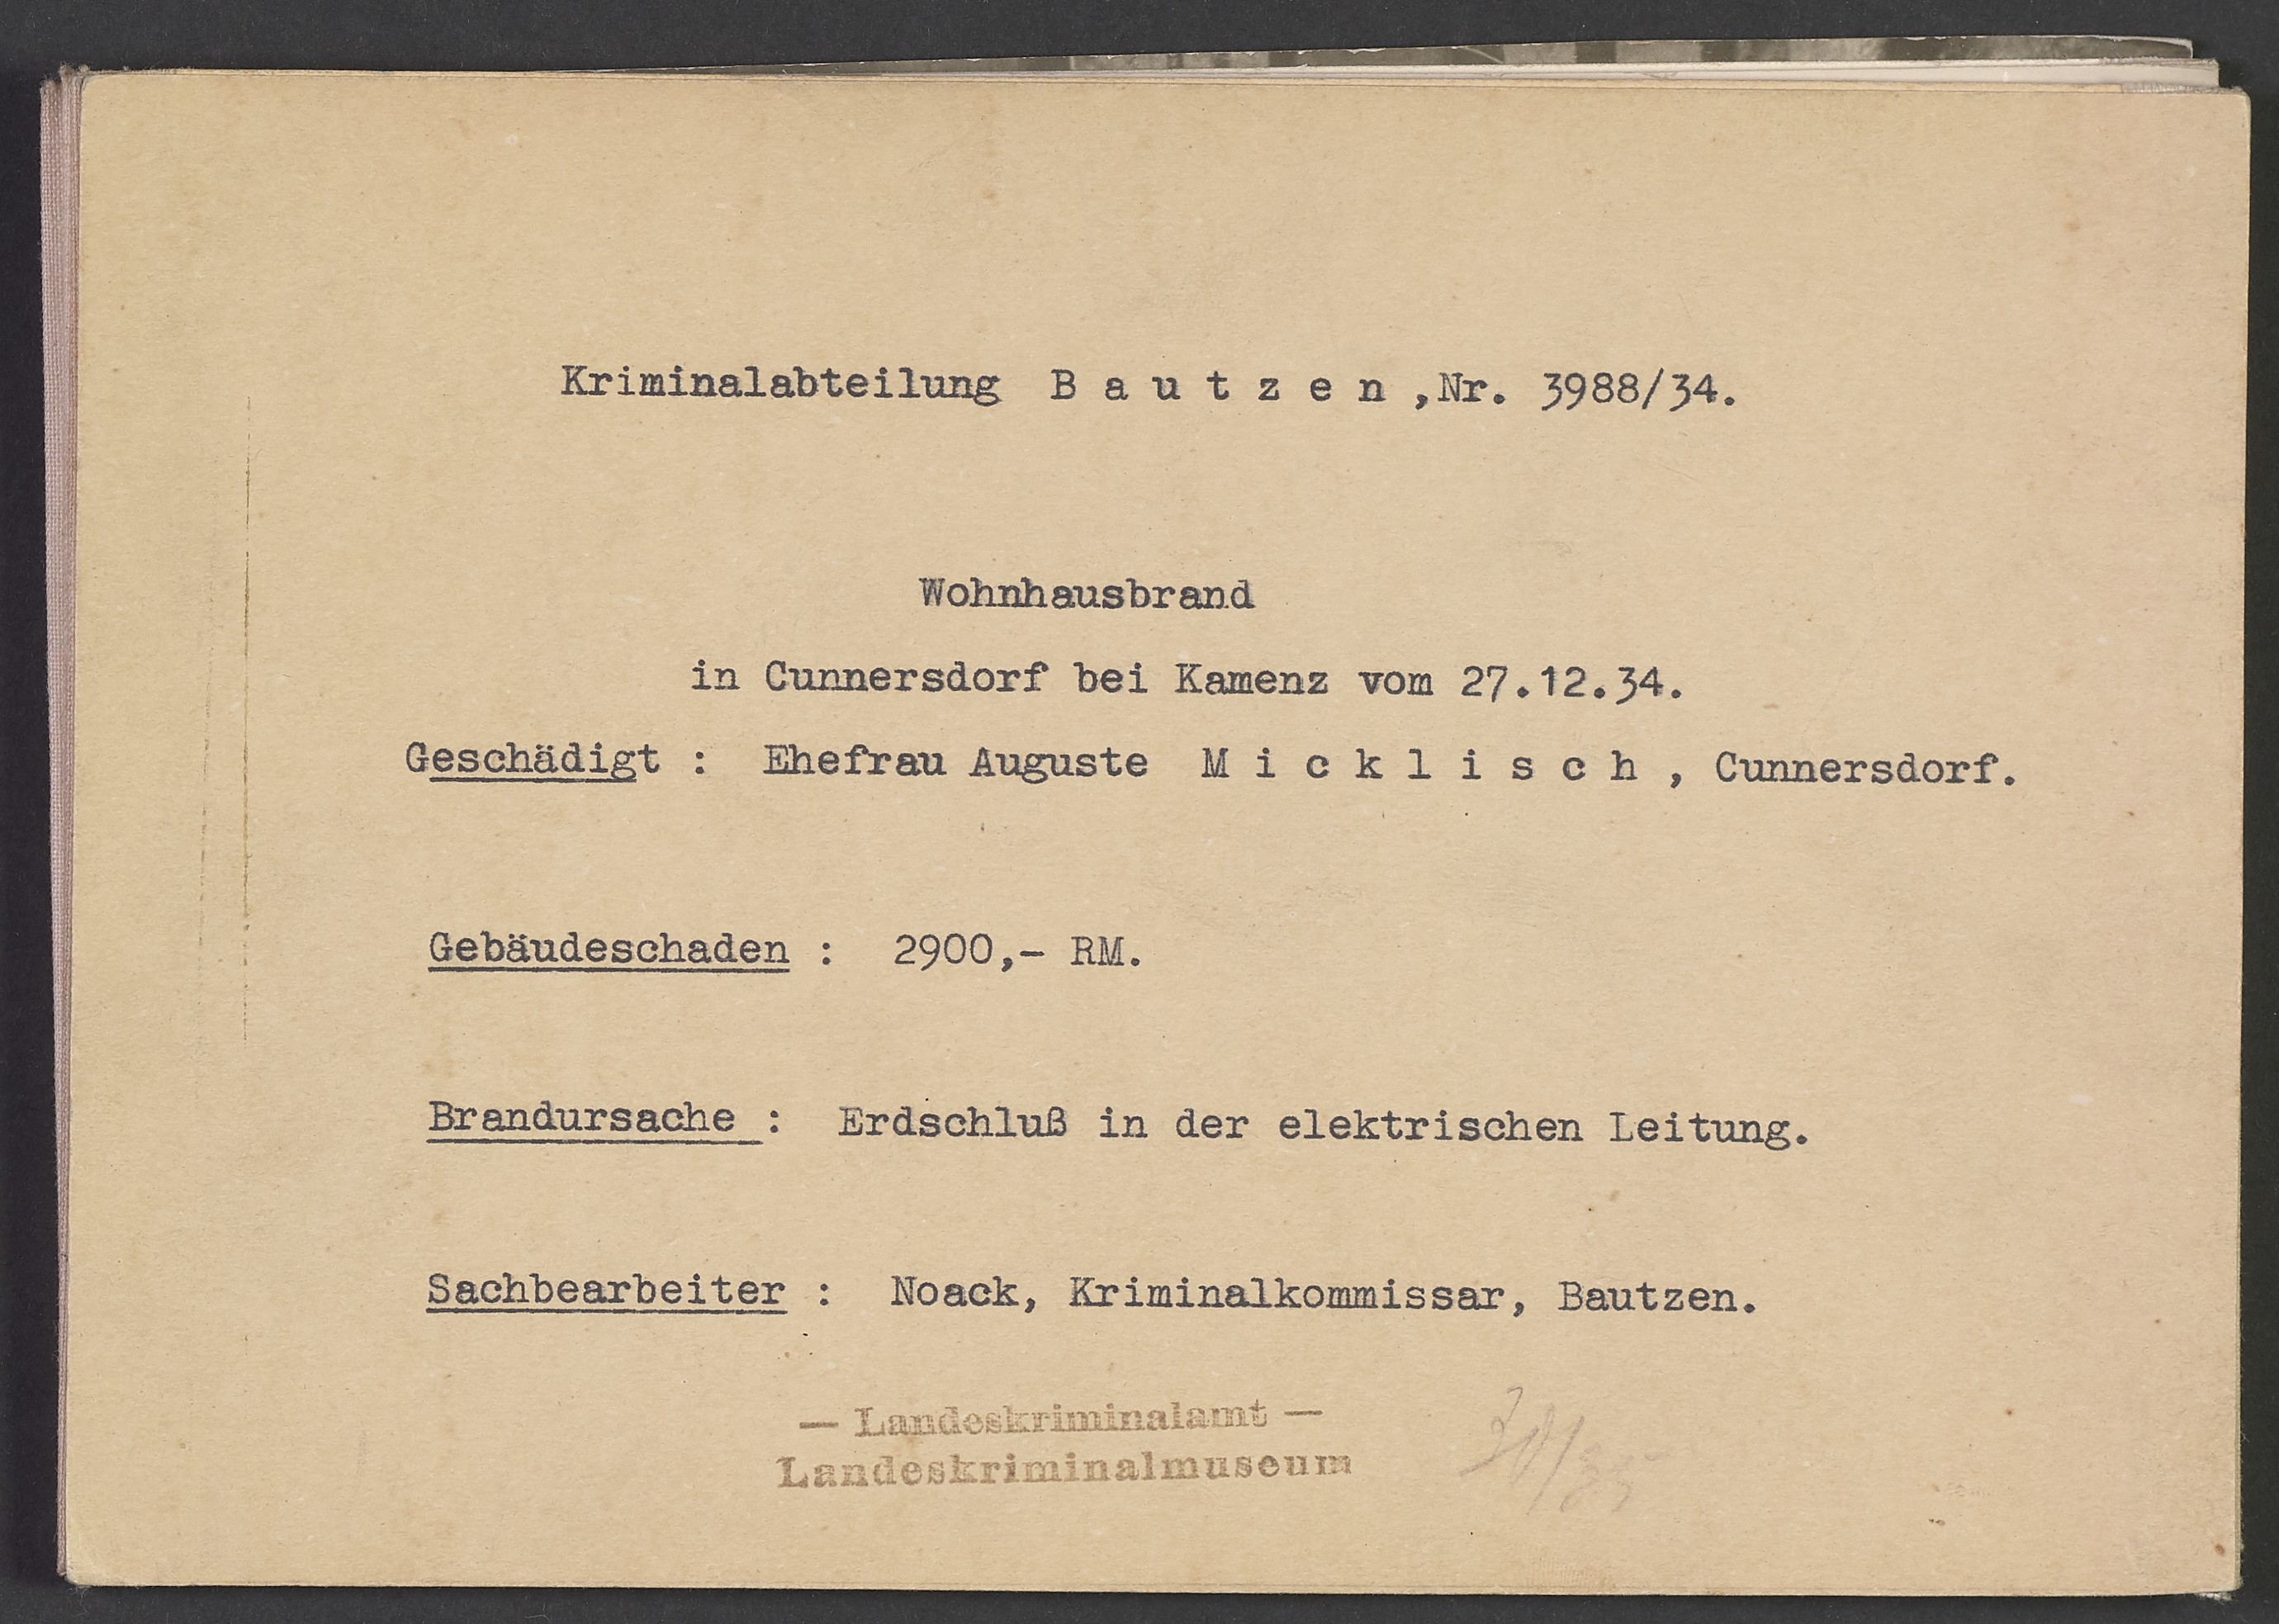 Bildanlagekarte "Wohnhausbrand Cunnersdorf 1934" (Polizeidirektion Dresden RR-F)